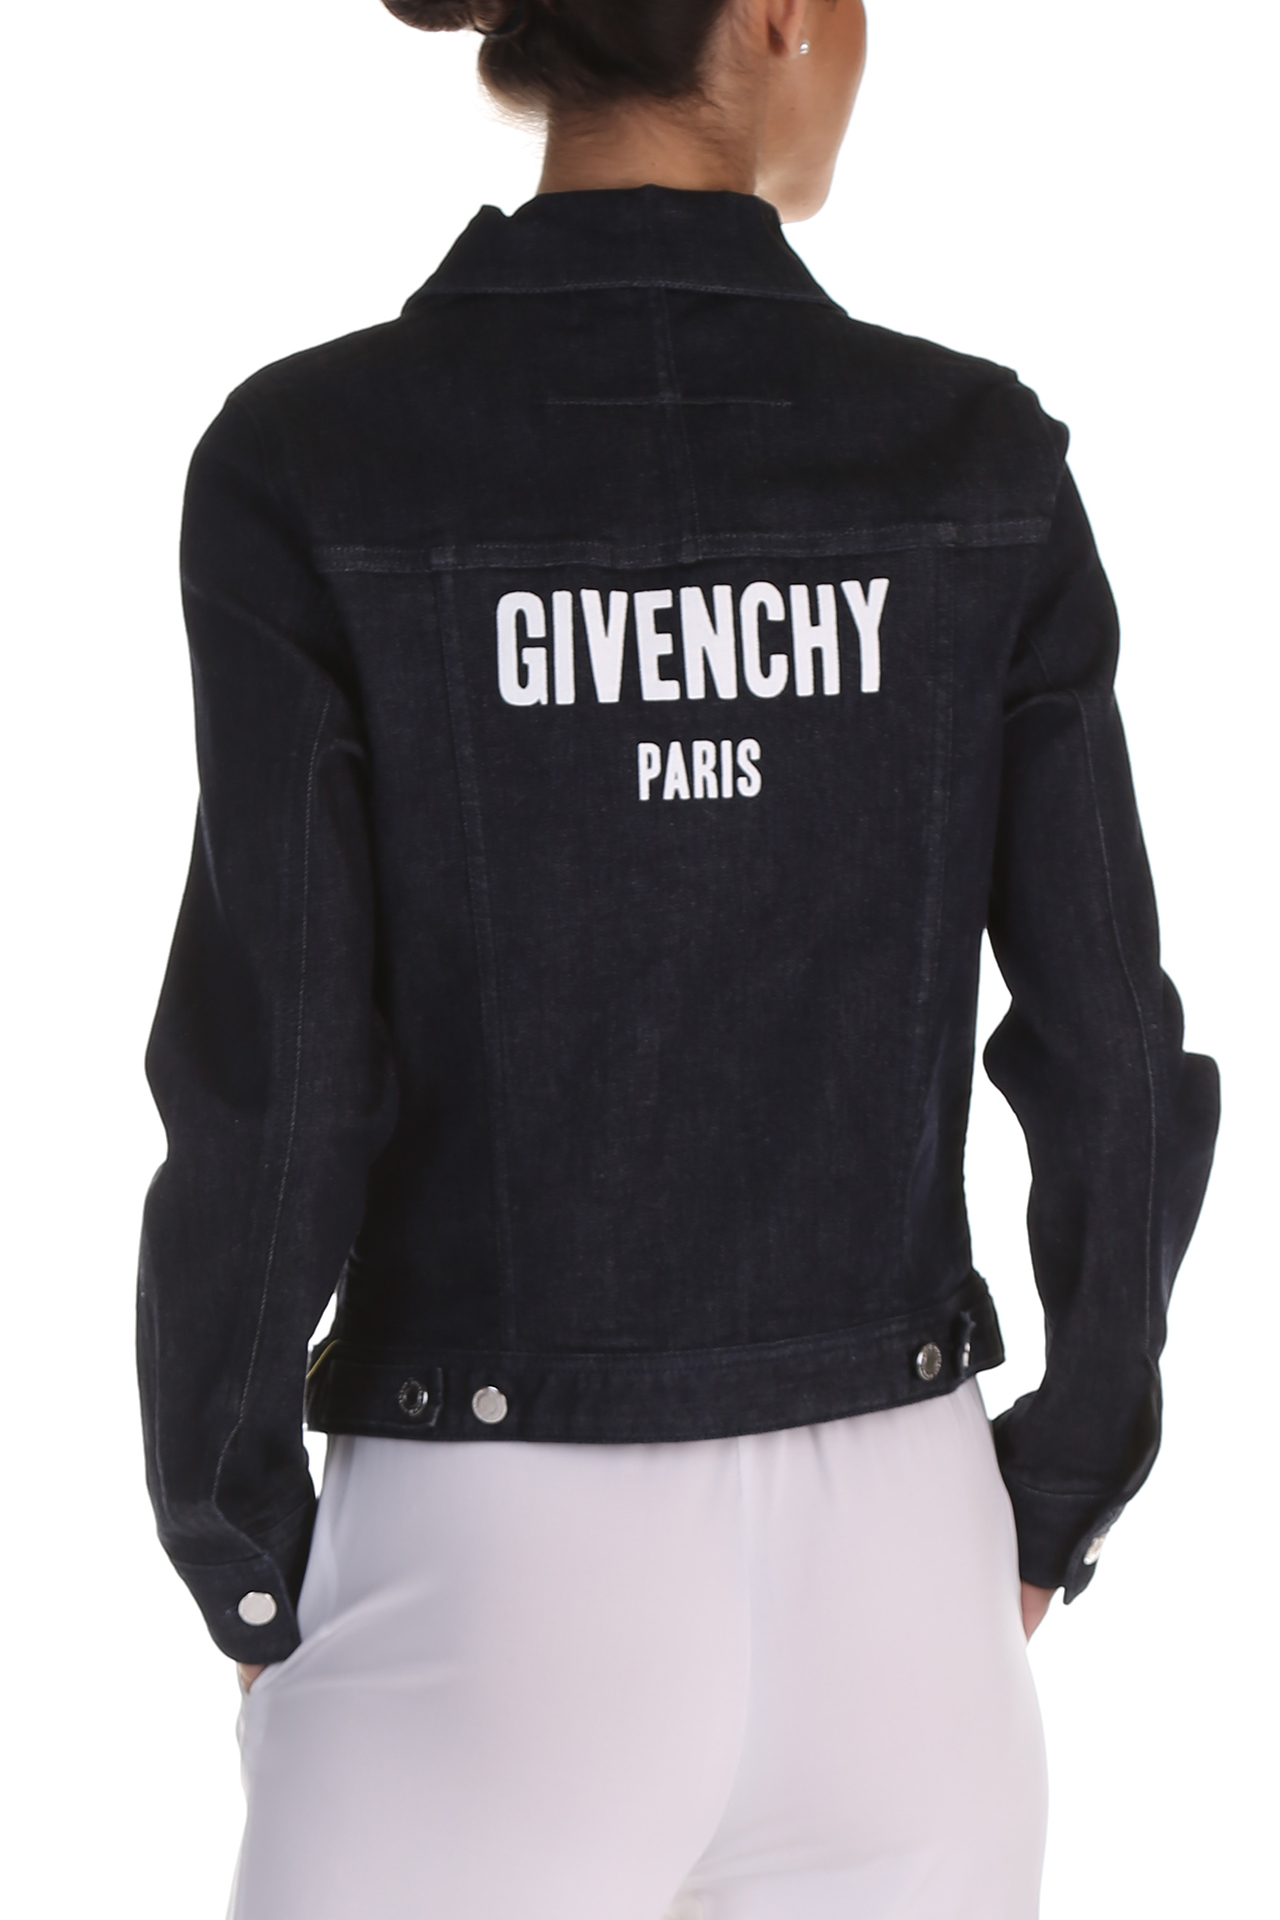 Givenchy, Jackets